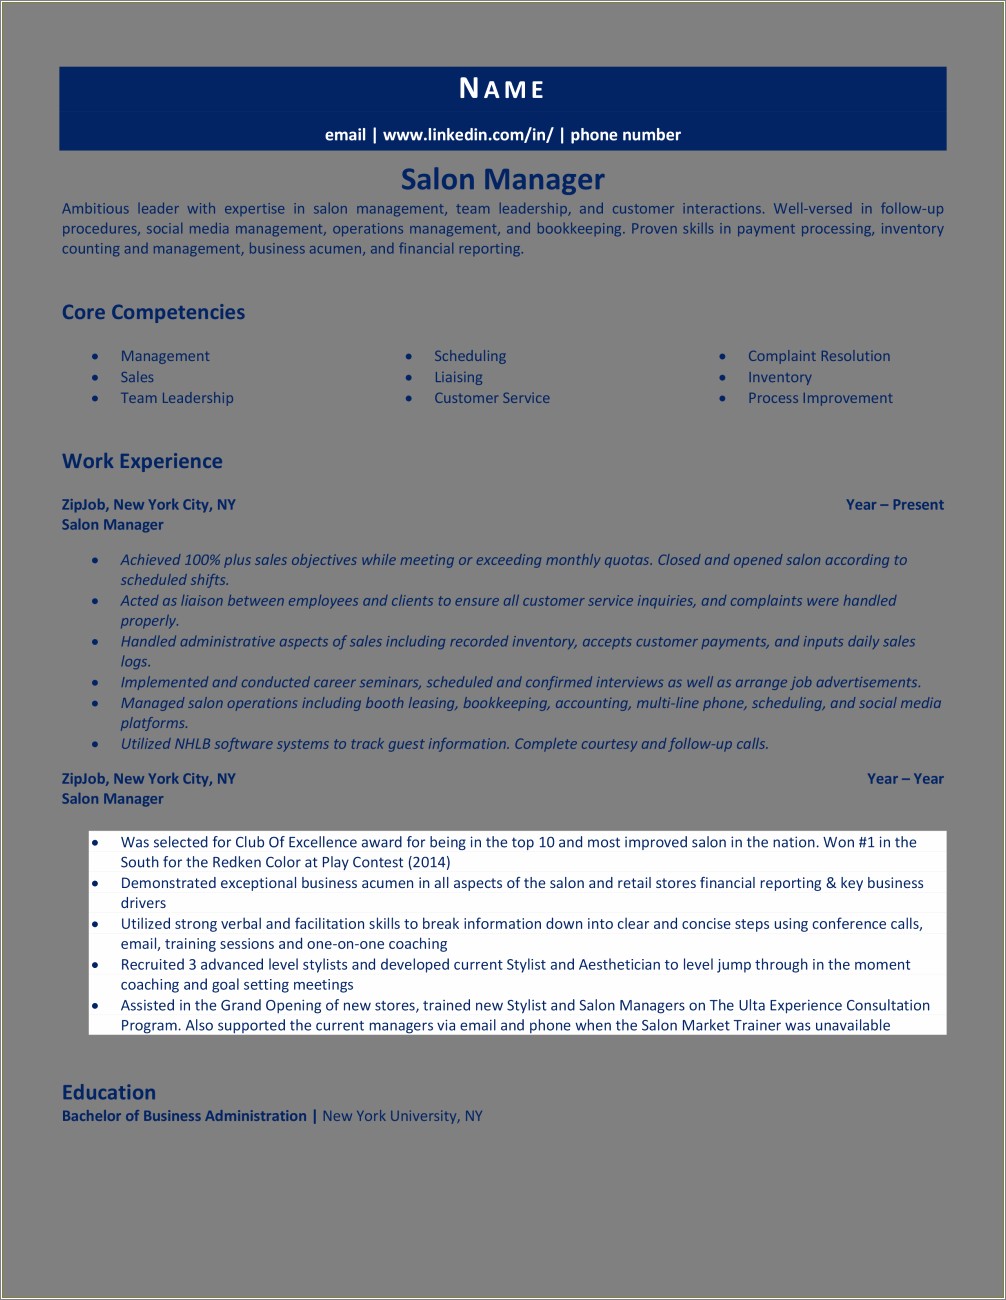 Sample Resume For Salon Owner